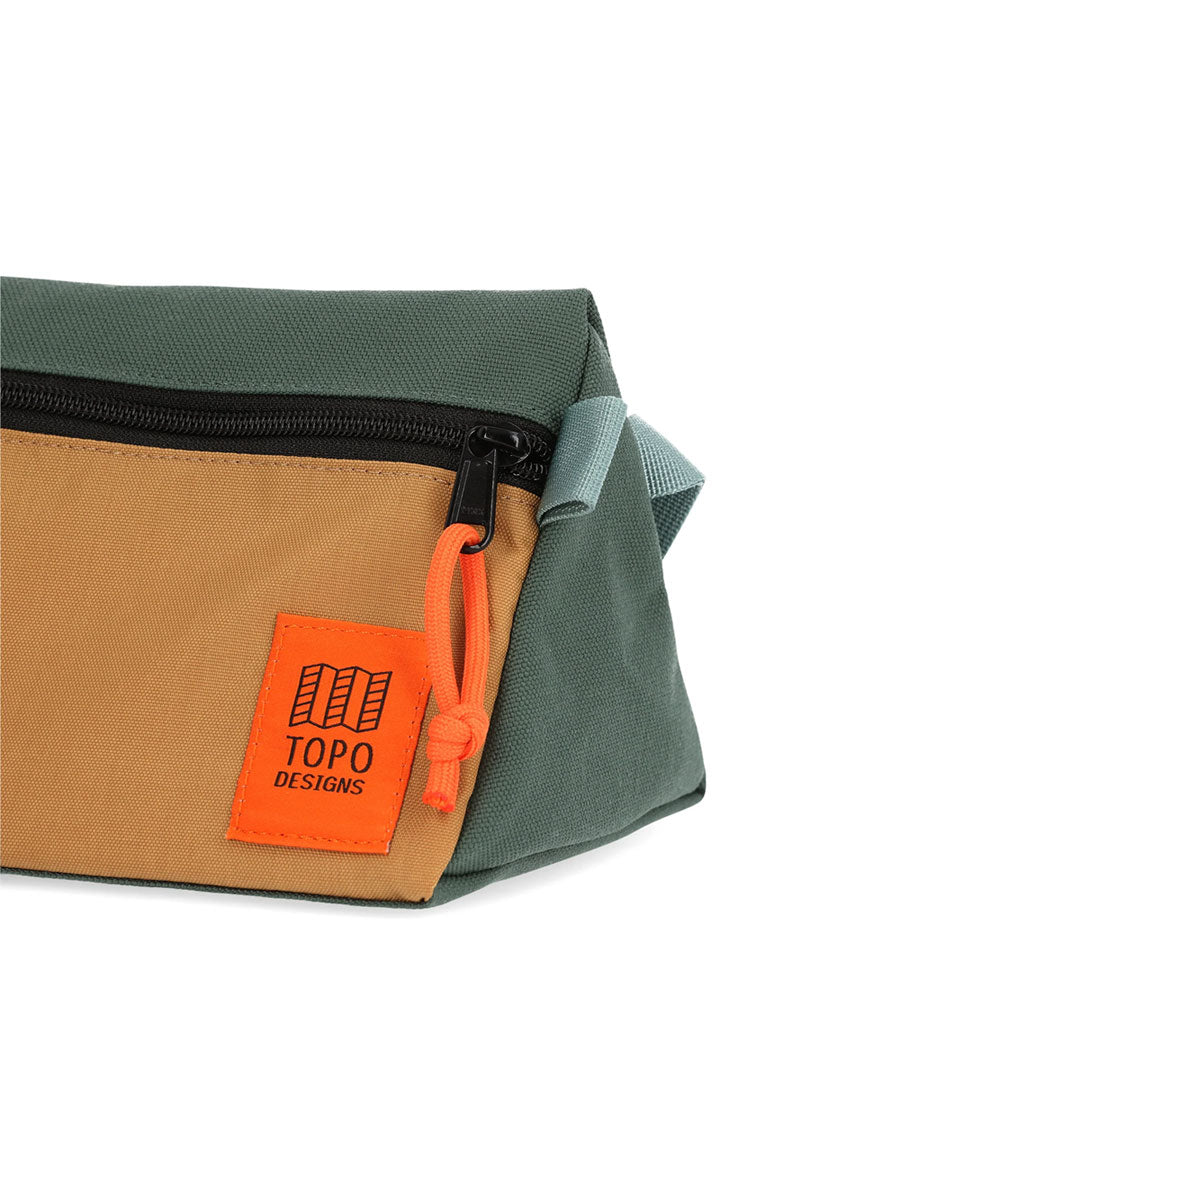 Topo Designs : Dopp Kit : Khaki/Forest